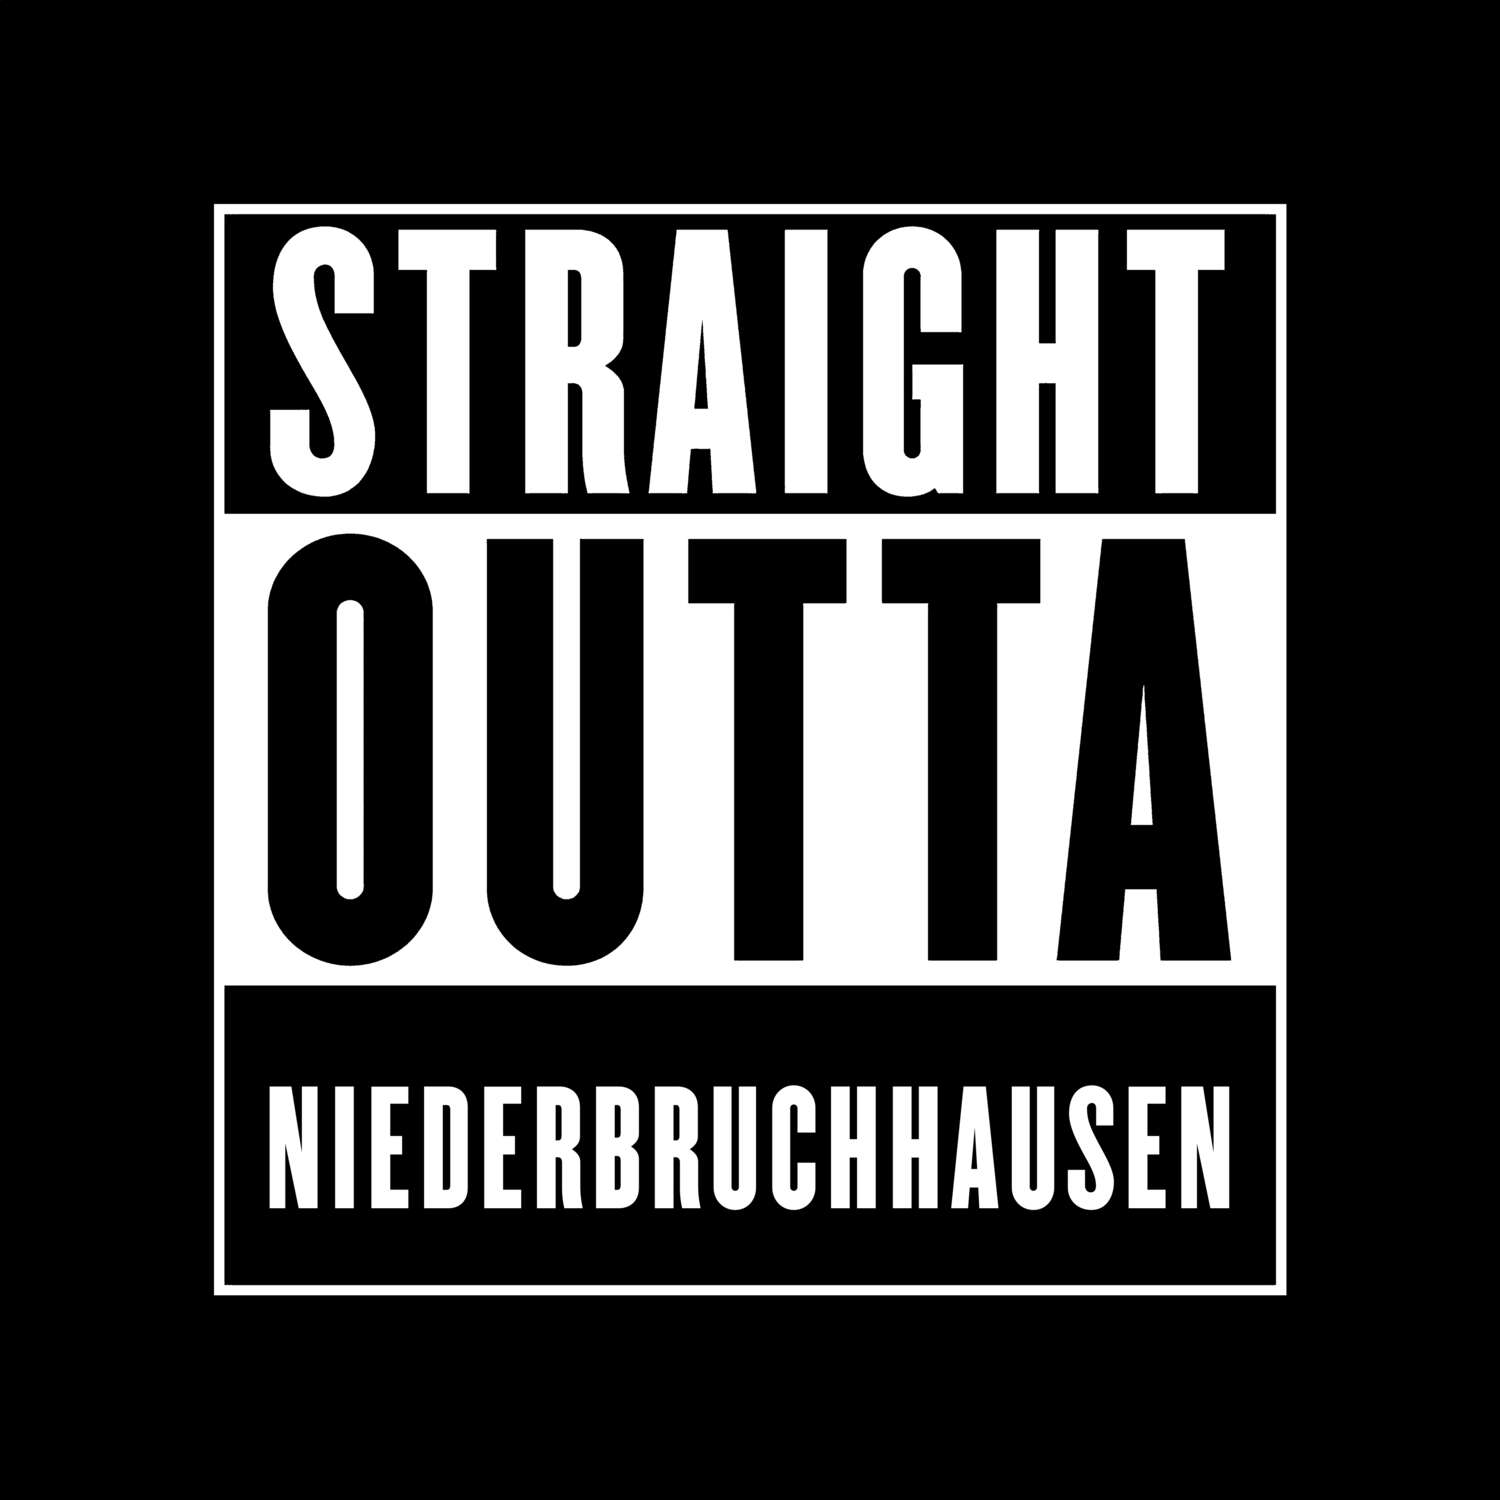 Niederbruchhausen T-Shirt »Straight Outta«